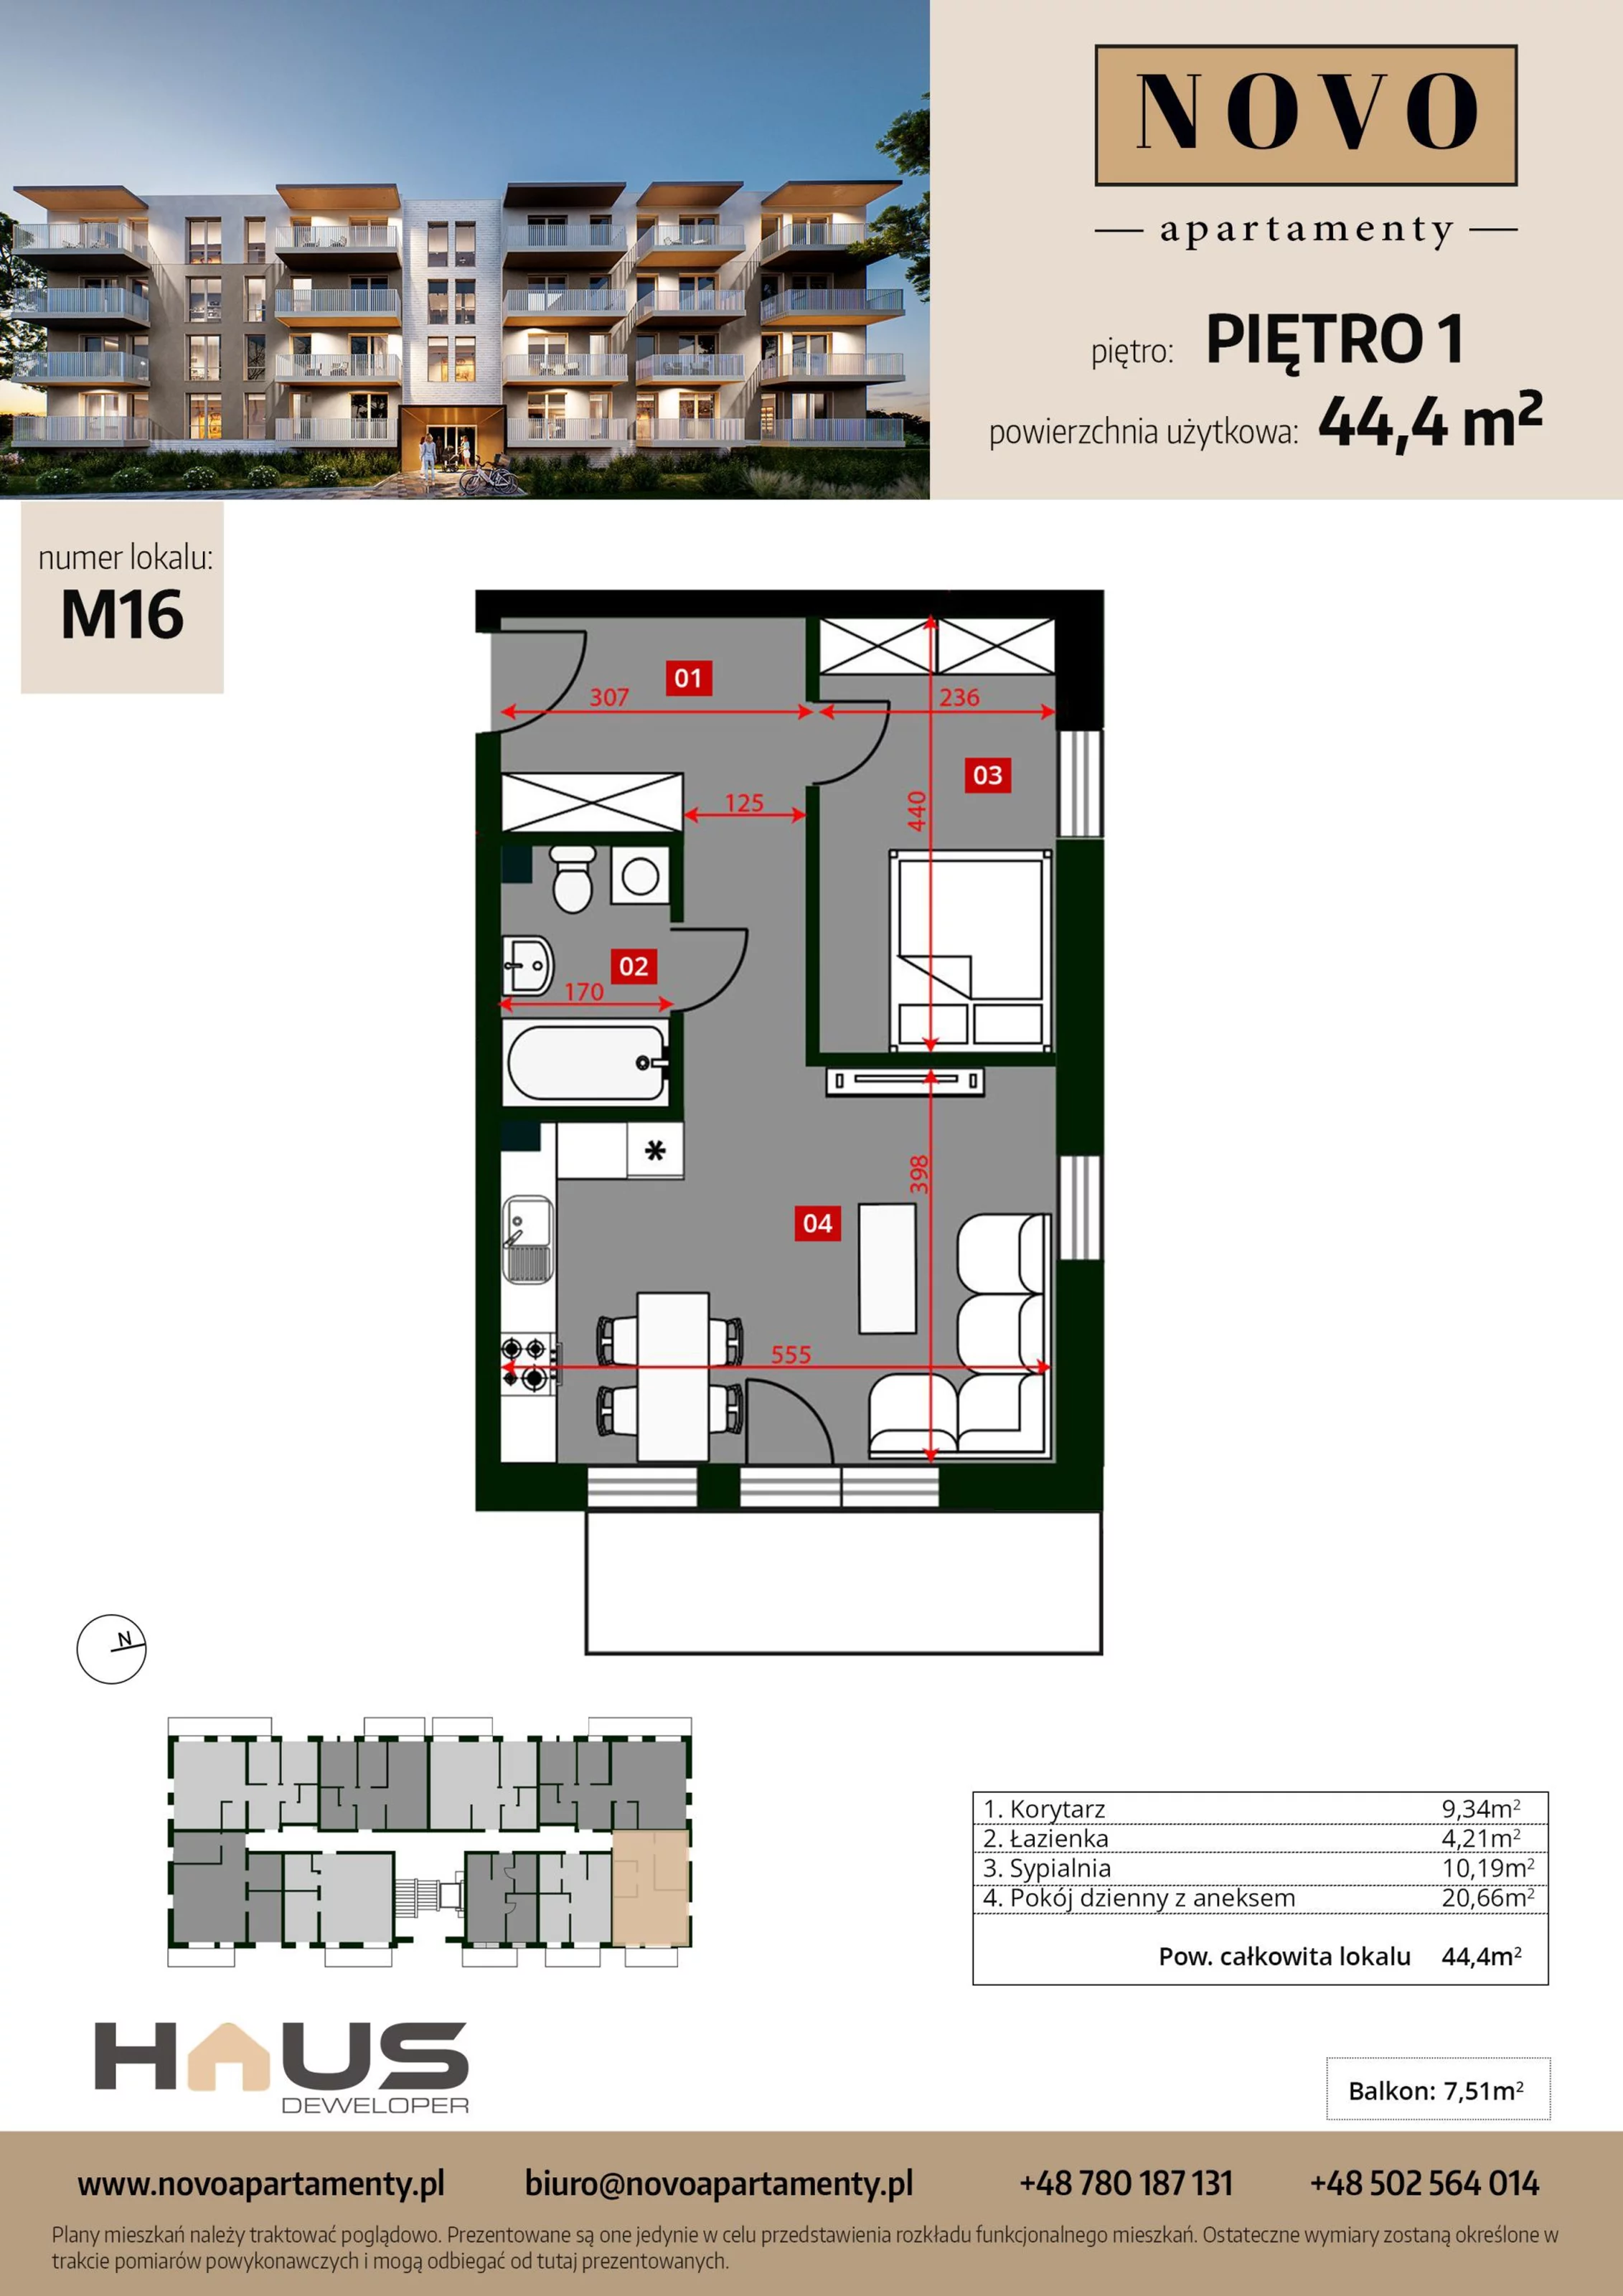 Mieszkanie 44,40 m², piętro 1, oferta nr M16, Apartamenty NOVO, Nysa, ul. Franciszkańska